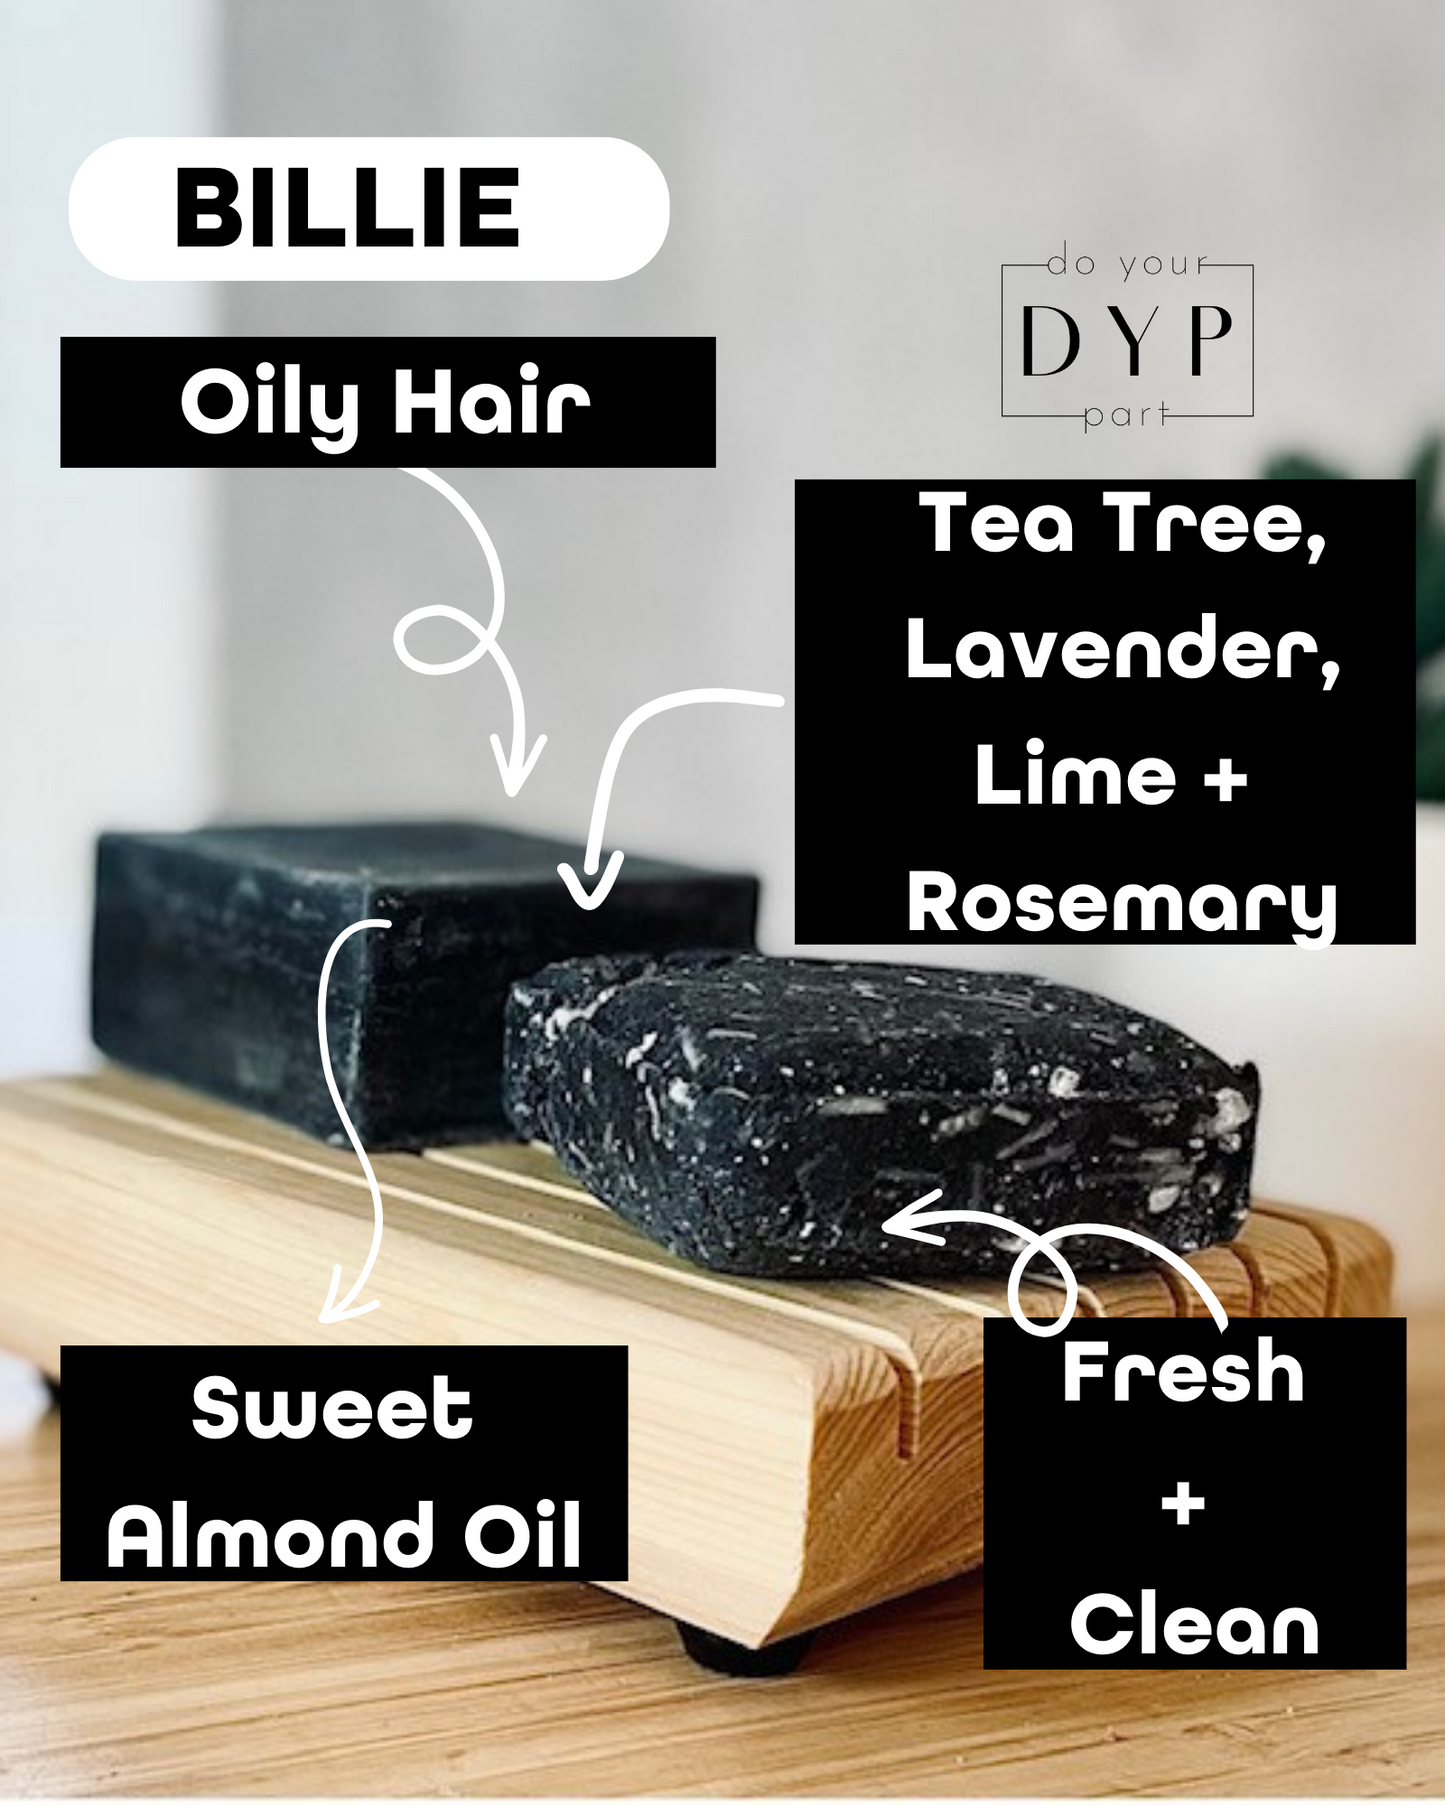 Billie Hair Bars for Oily Hair